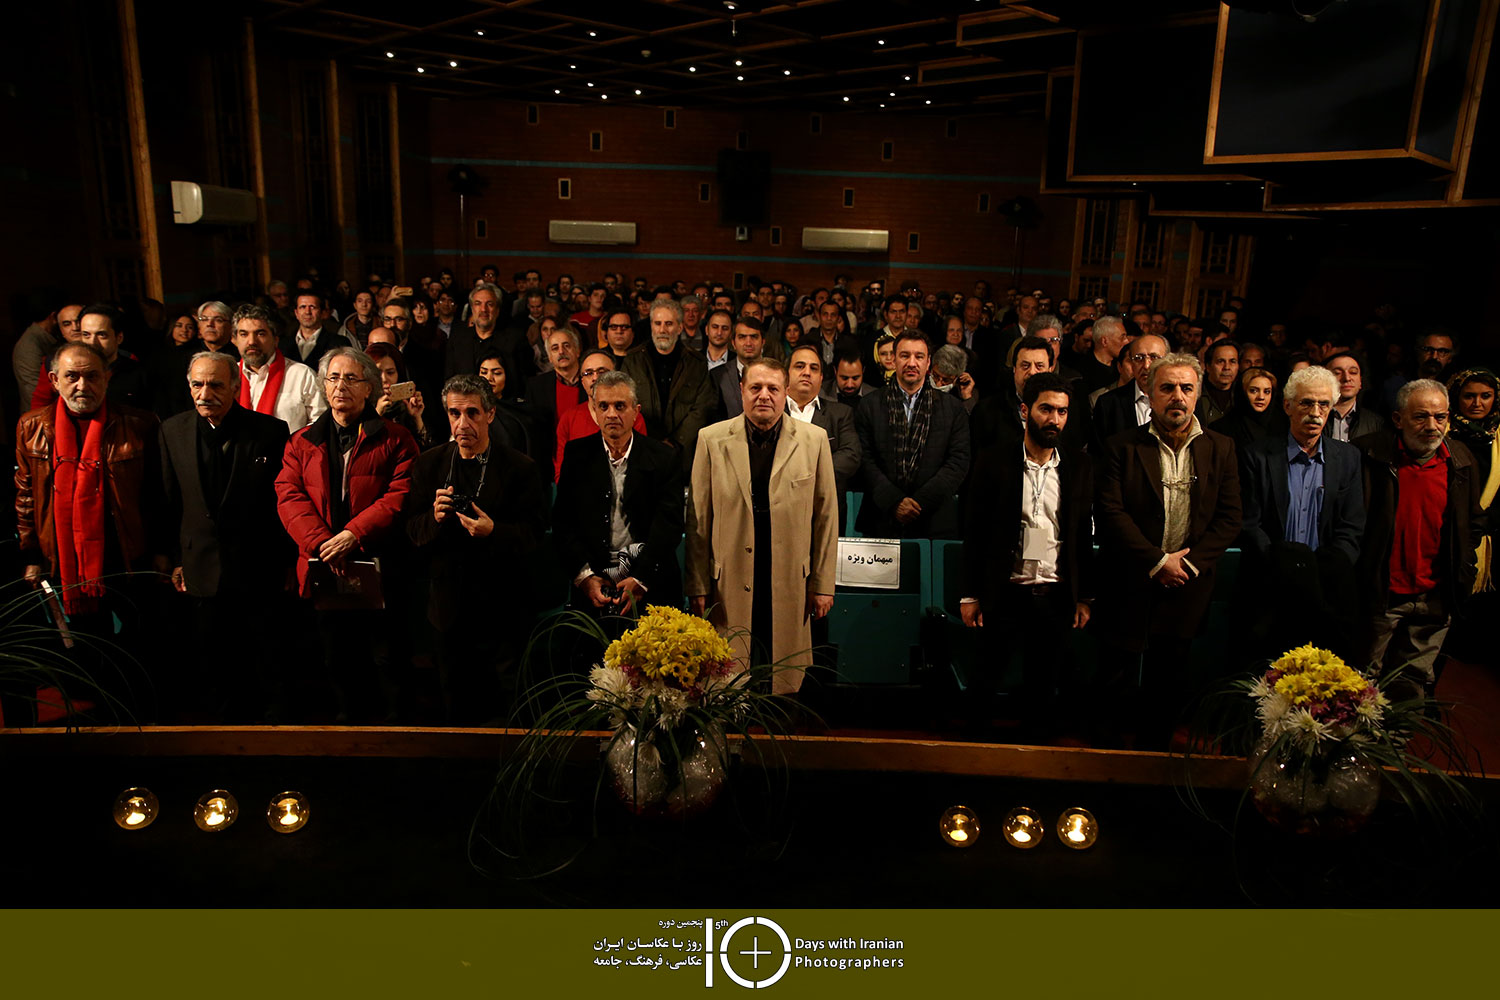 مراسم افتتاحیه پنجمین دوره ده روز با عکاسان ایران / عکاسان:کرمی/ ذاکری